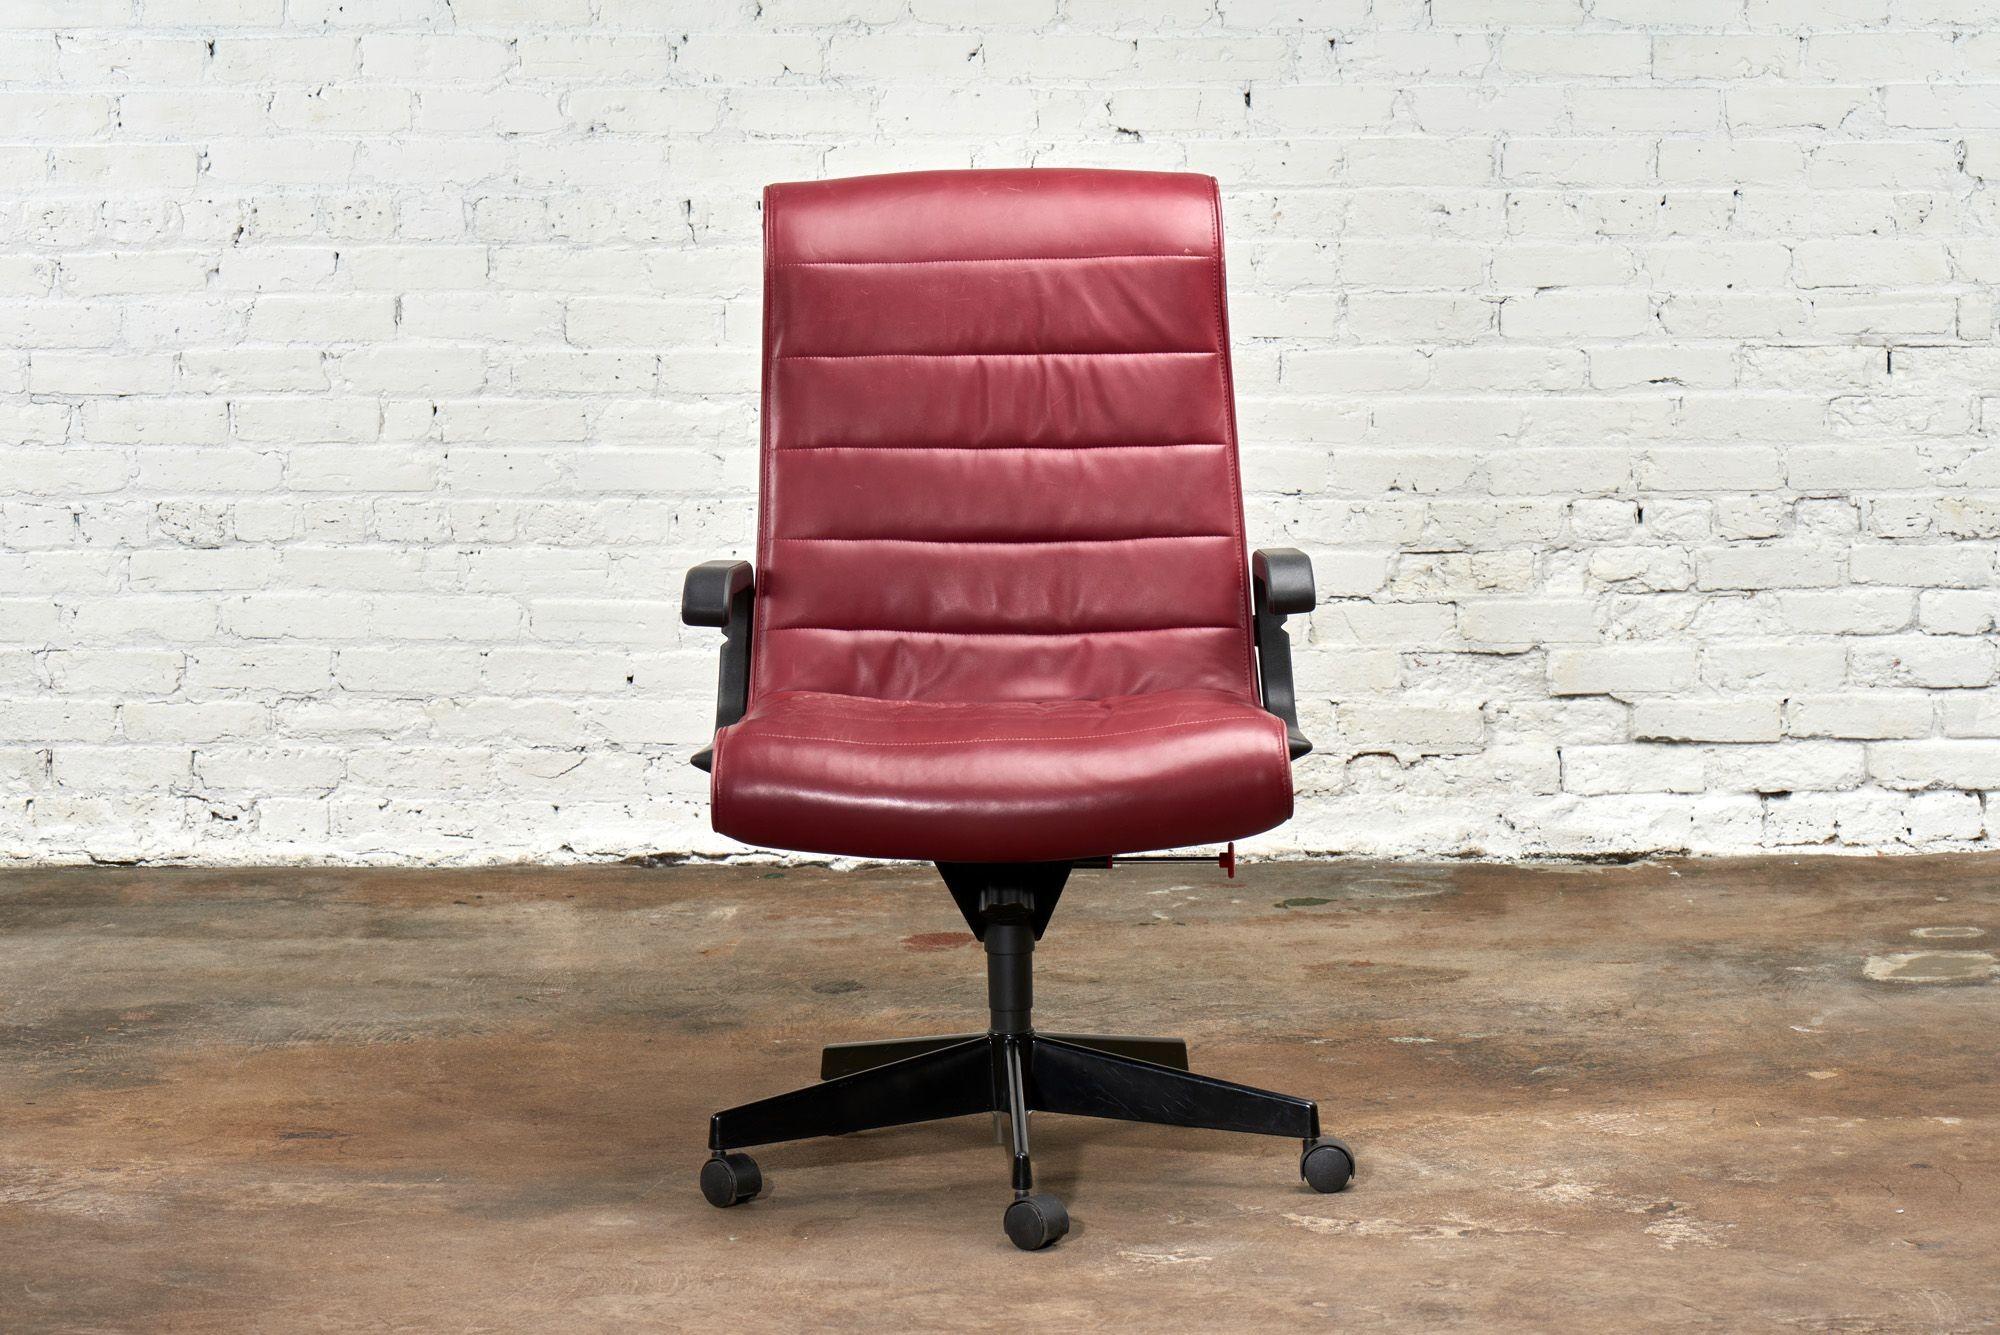 Chaise de bureau en cuir rouge pour Knoll/Knoll Intl, France 1992. Le cuir d'origine est en très bon état.

